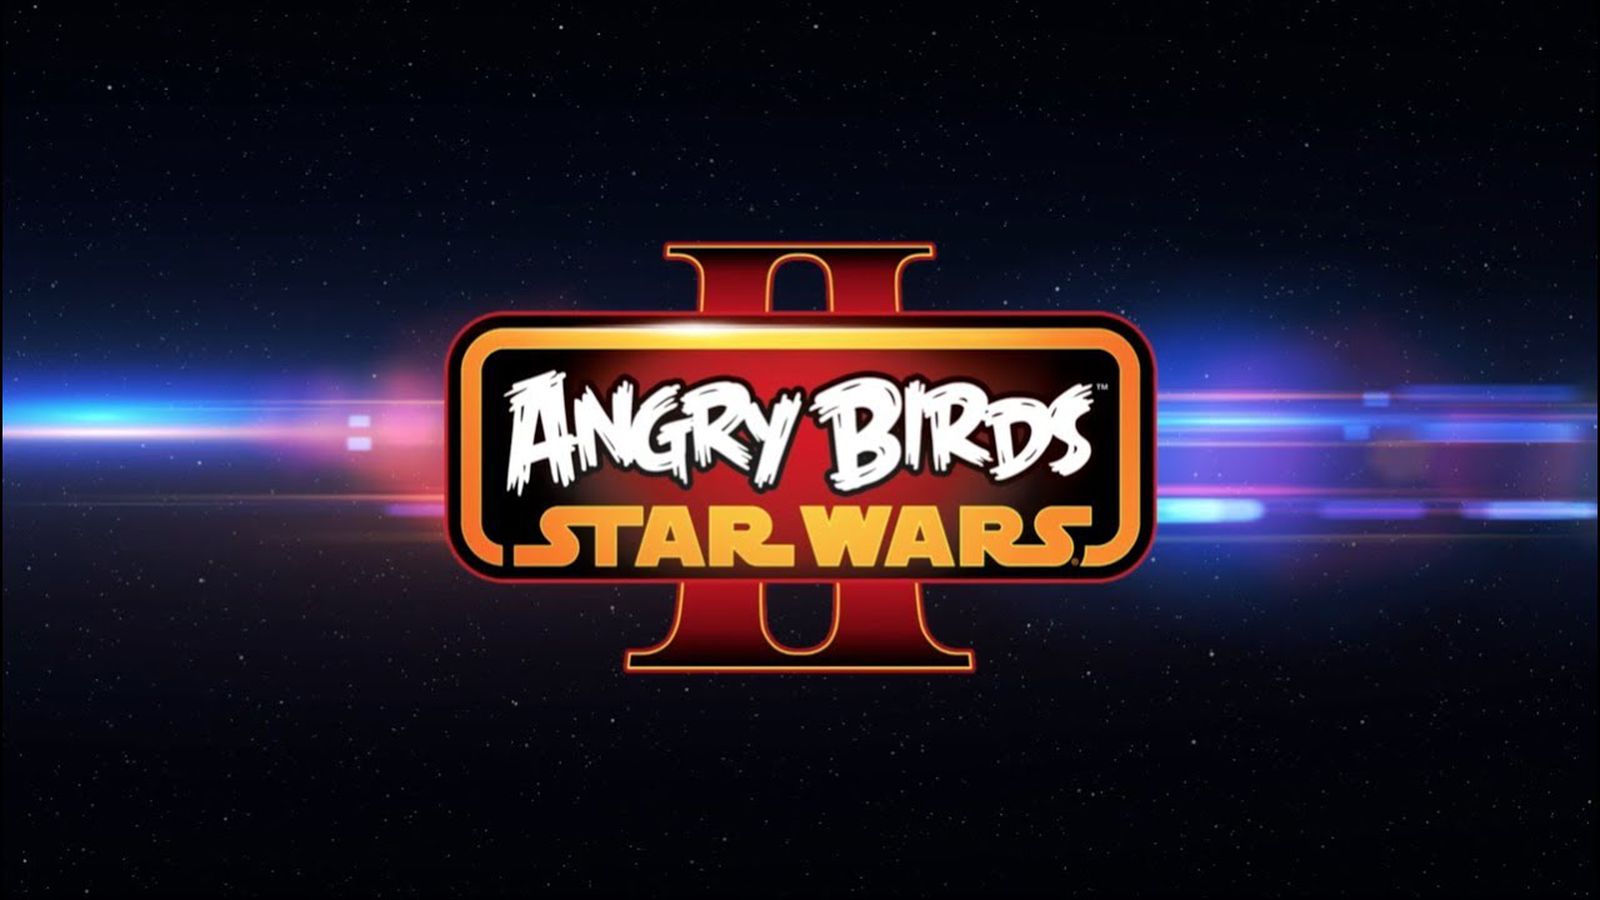 Angry birds star wars андроид. Angry Birds Star Wars 2. Энгри бердз Стар ВАРС. Энгри бёрдз Звёздные войны 1. Энгри бердз Звездные войны джедаи.